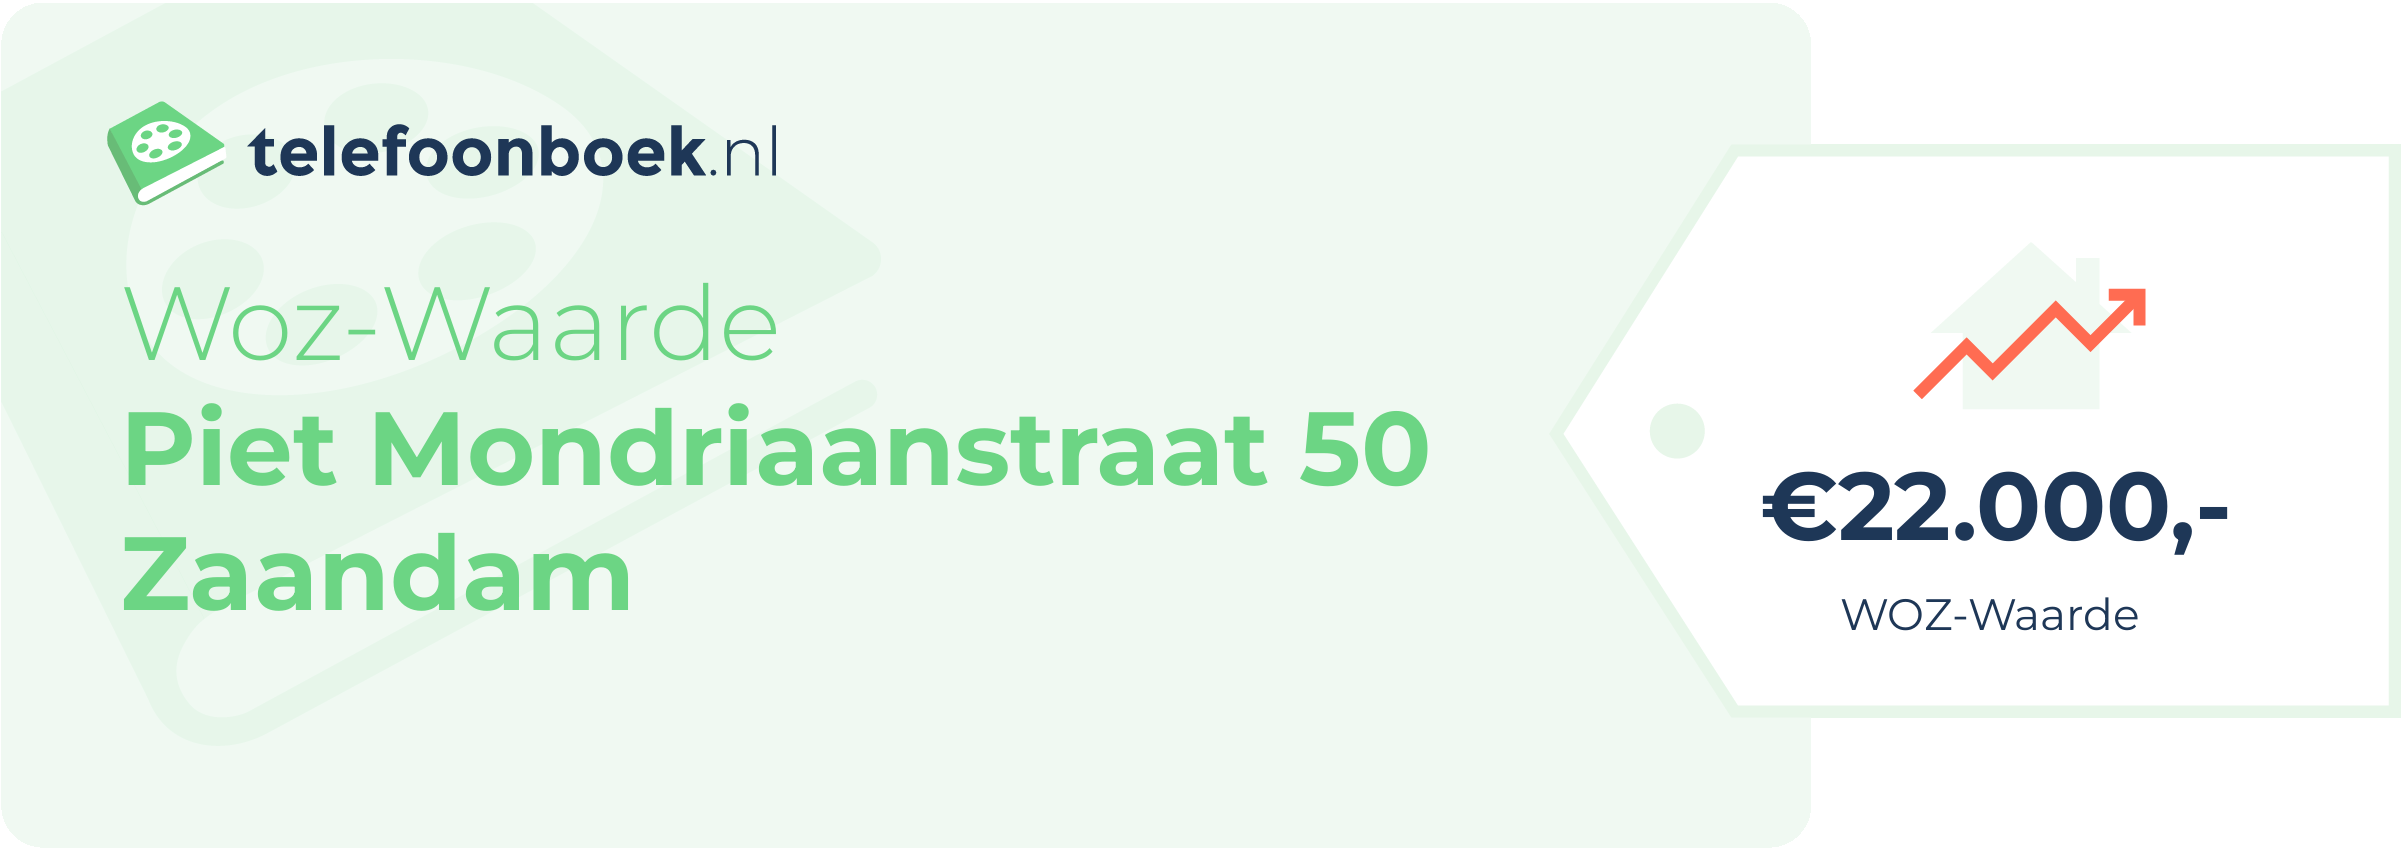 WOZ-waarde Piet Mondriaanstraat 50 Zaandam